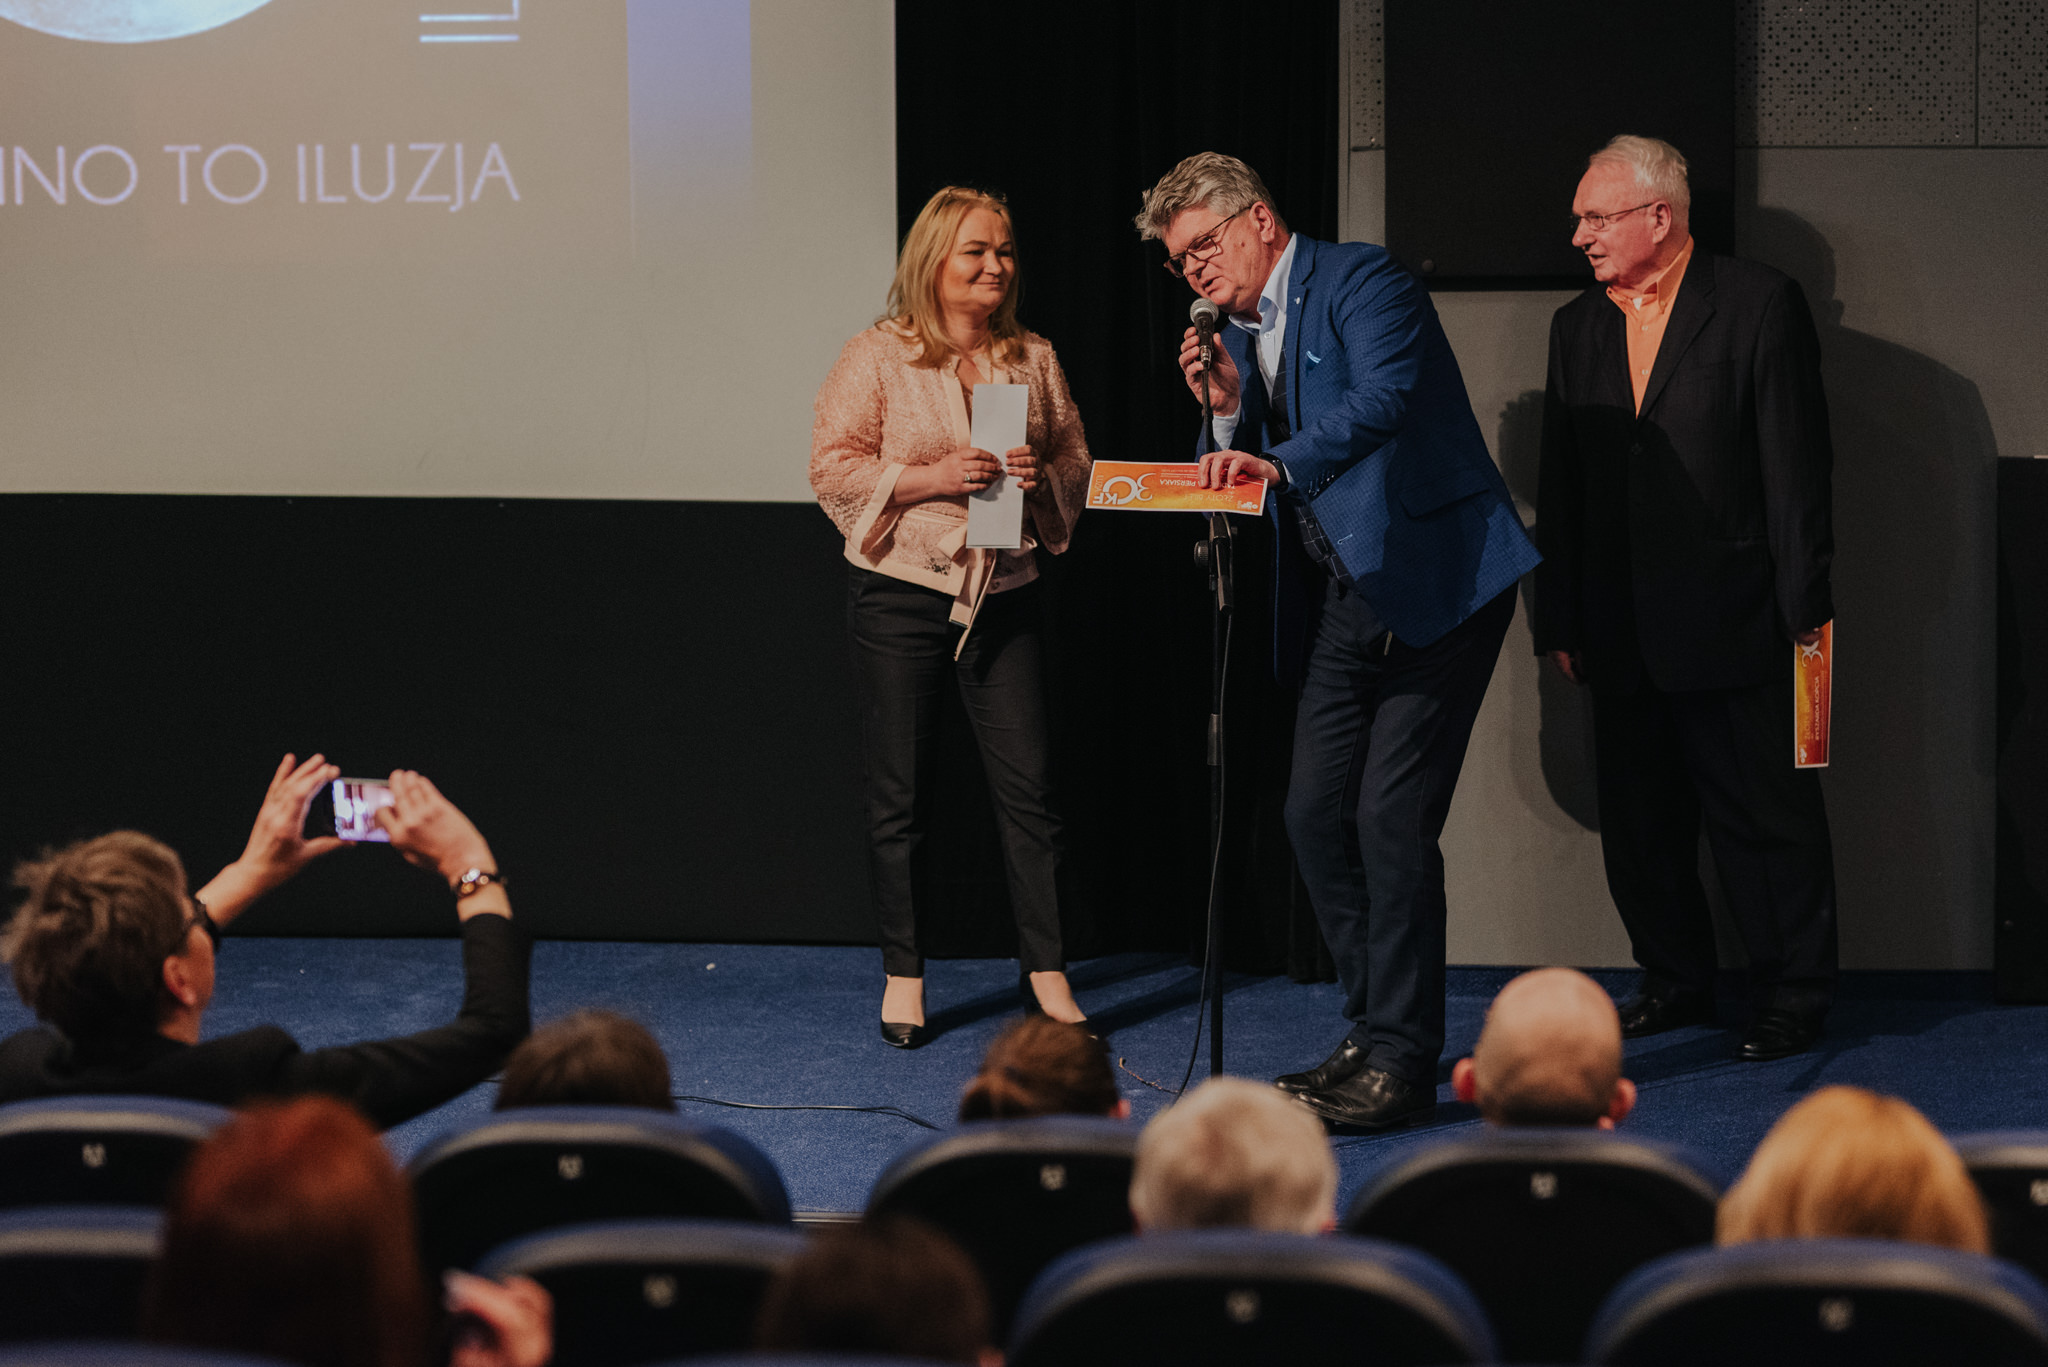 Kino Studyjne OKF Iluzja w Częstochowie | Jubileusz 30 lat